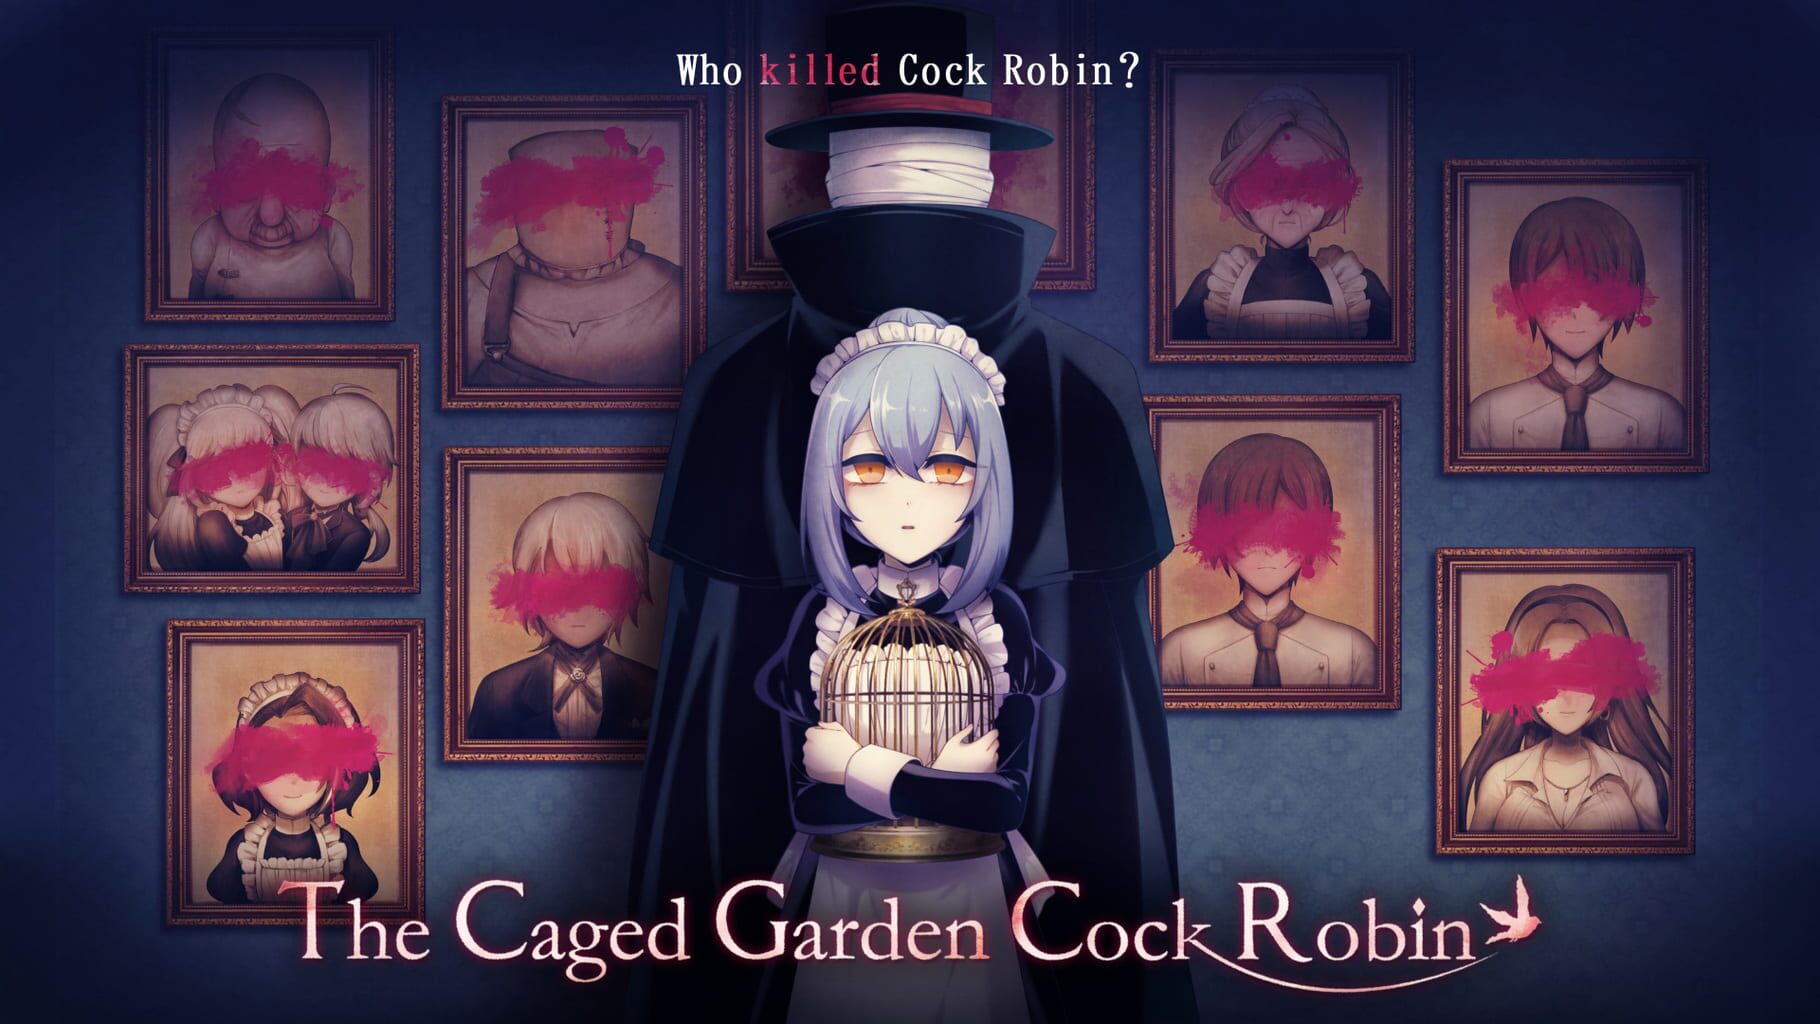 Caged Garden Cock Robin artwork